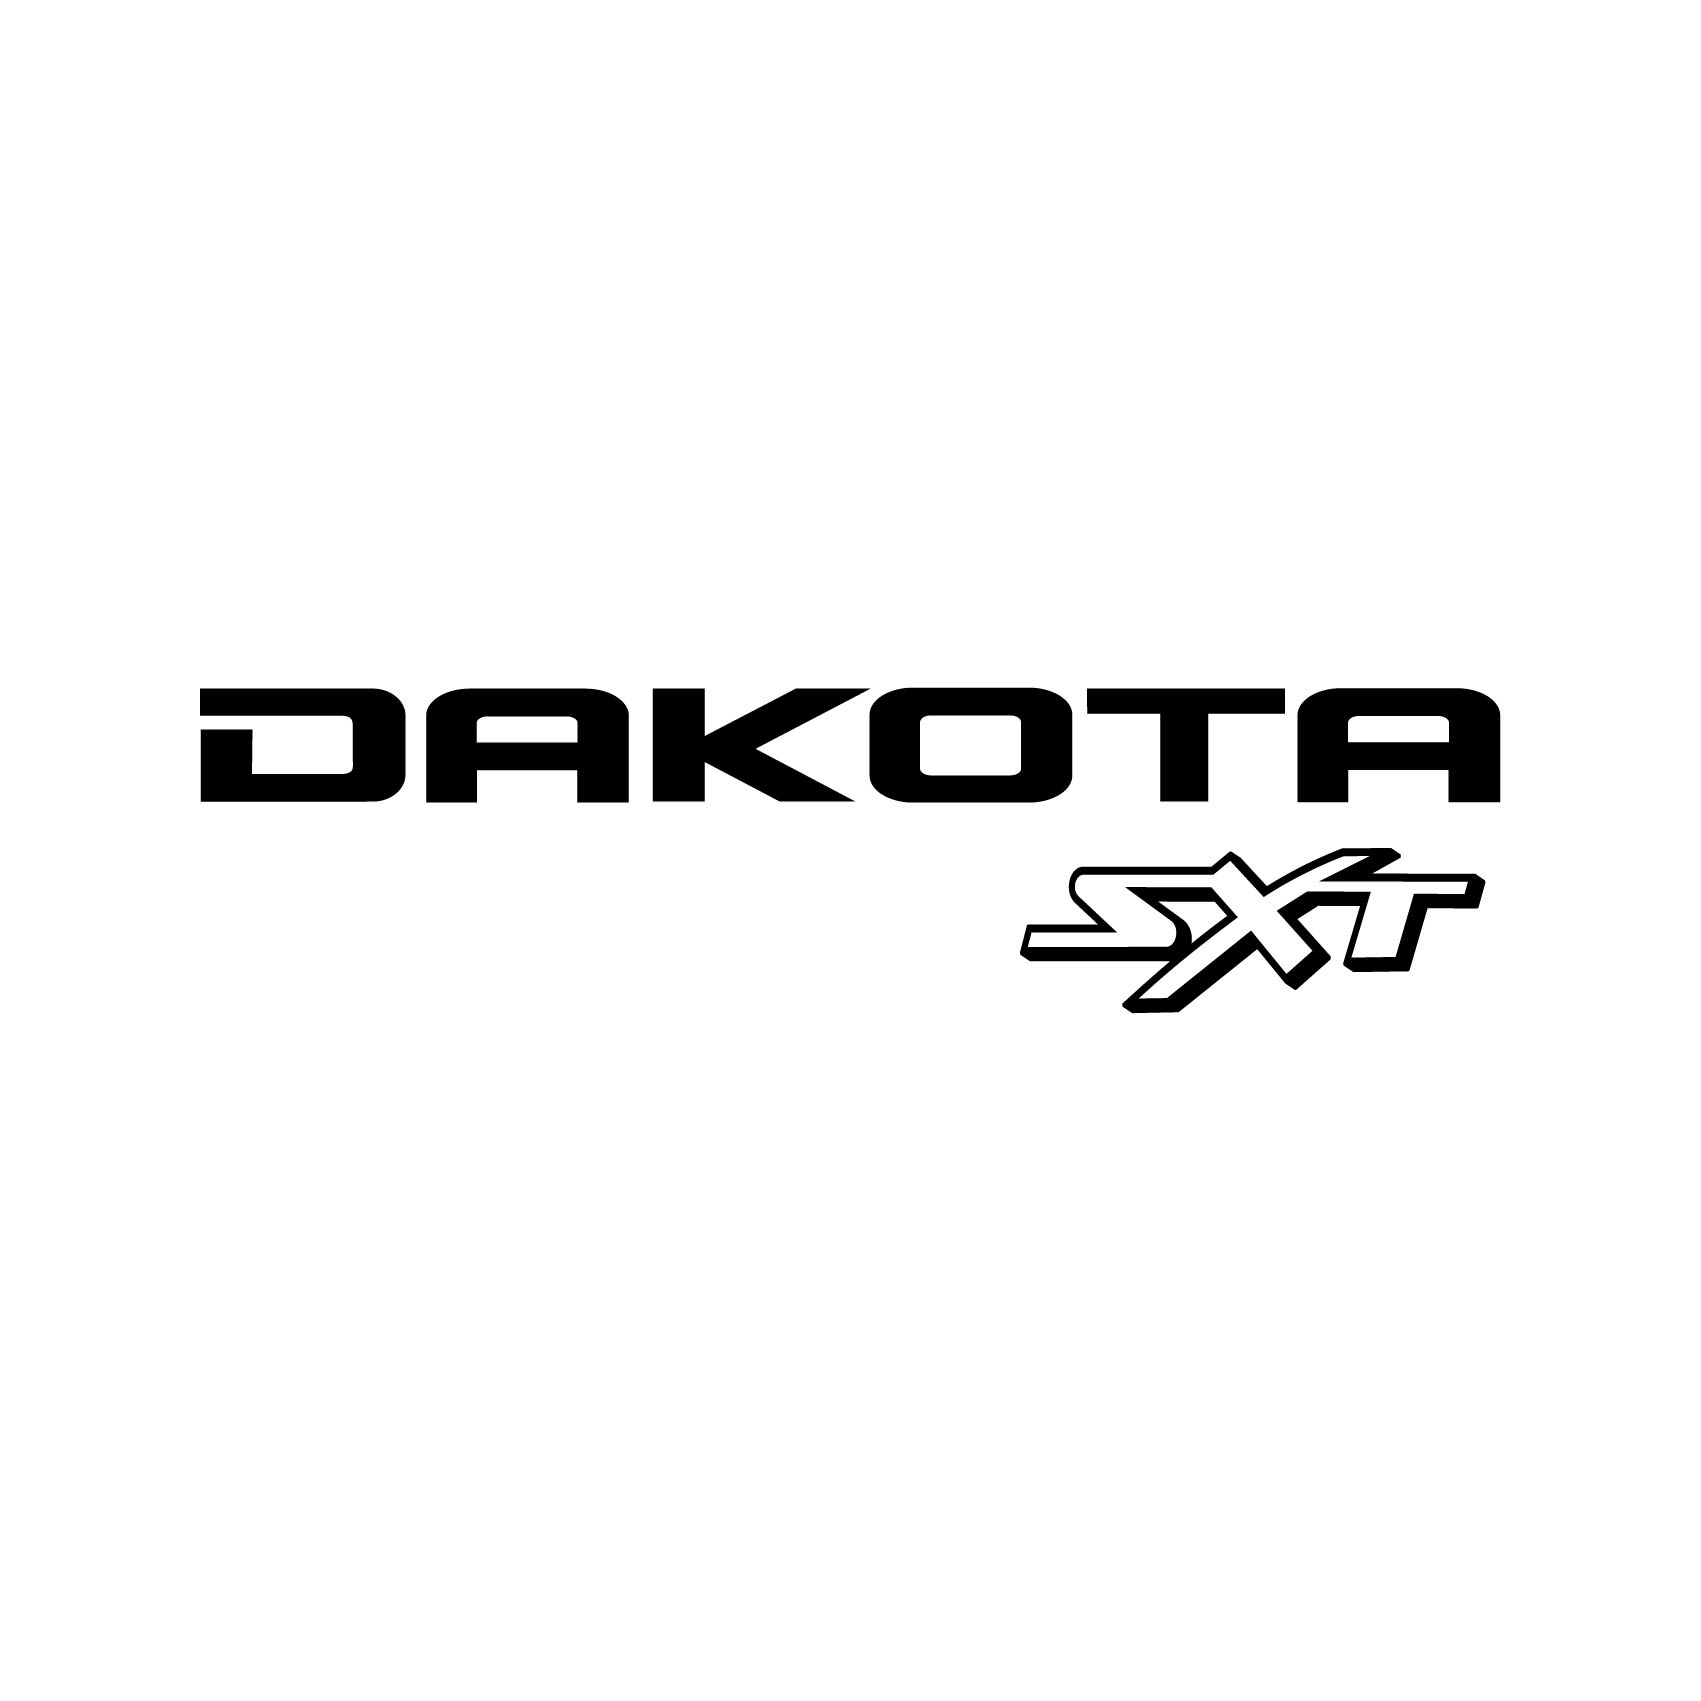 stickers-dodge-dakota-sxt-ref3dodge4x4-autocollant-4x4-sticker-pour-tout-terrain-off-road